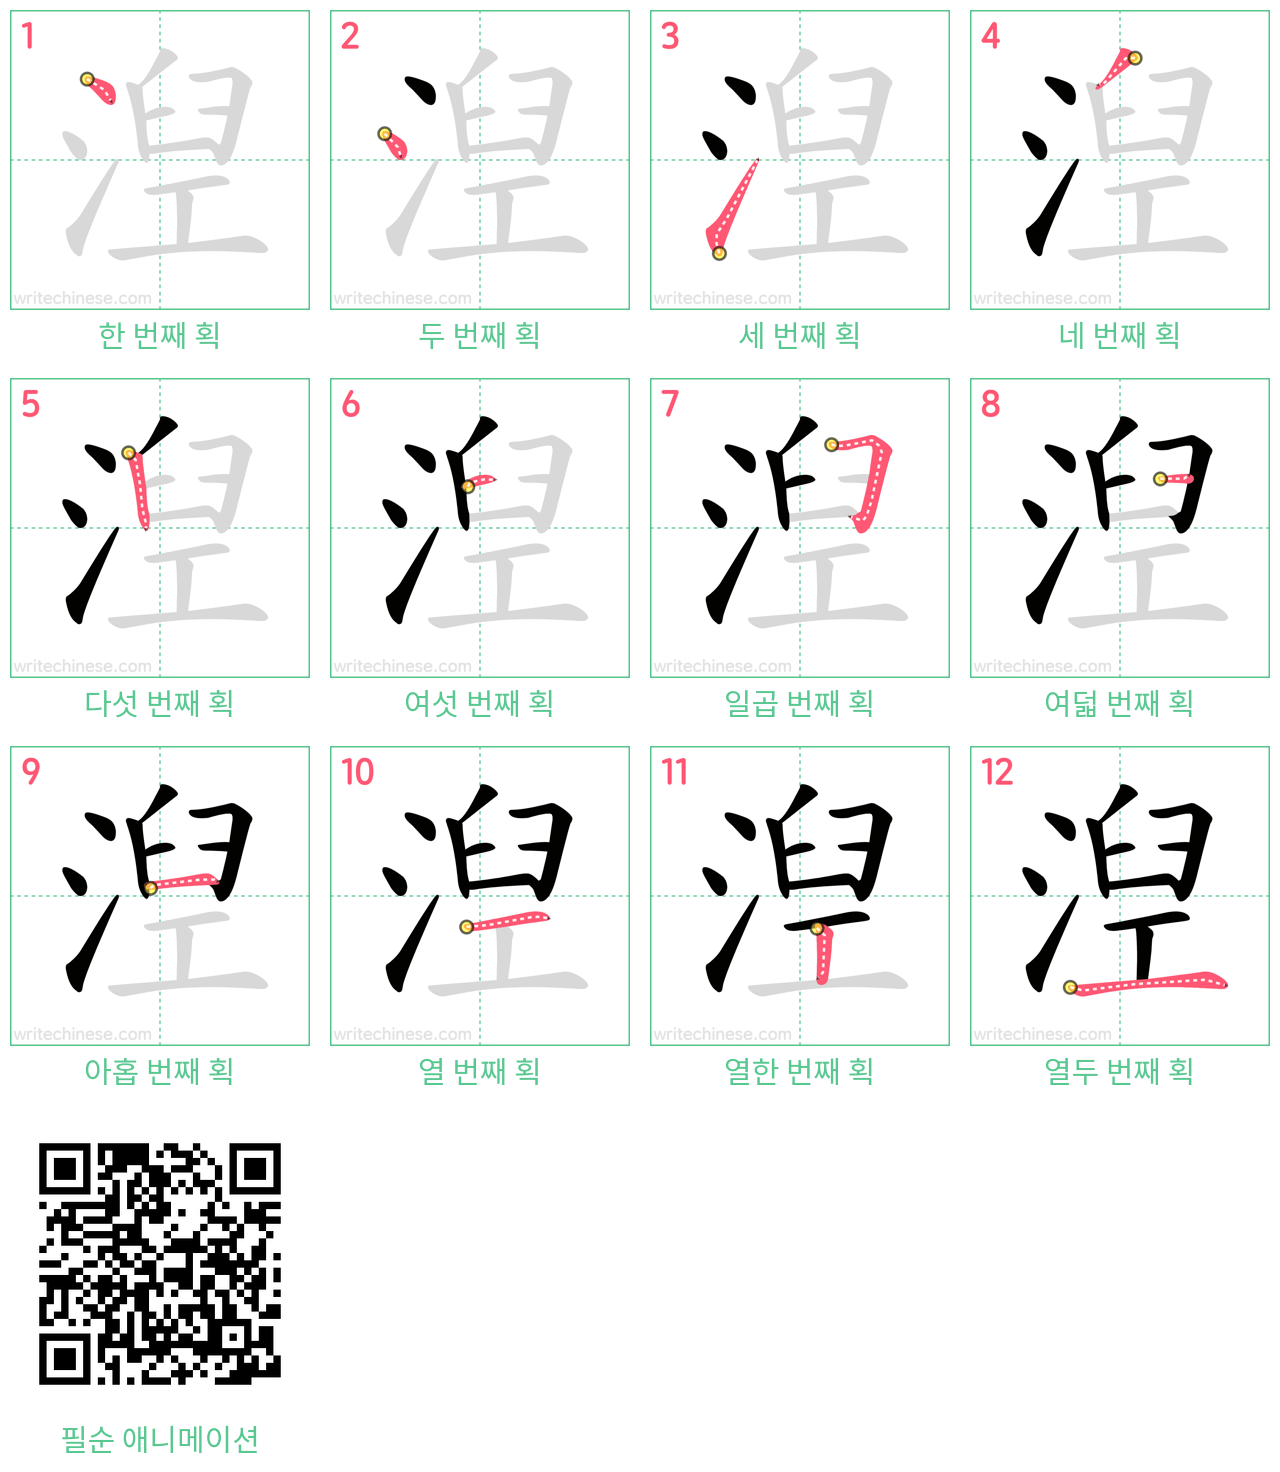 湼 step-by-step stroke order diagrams